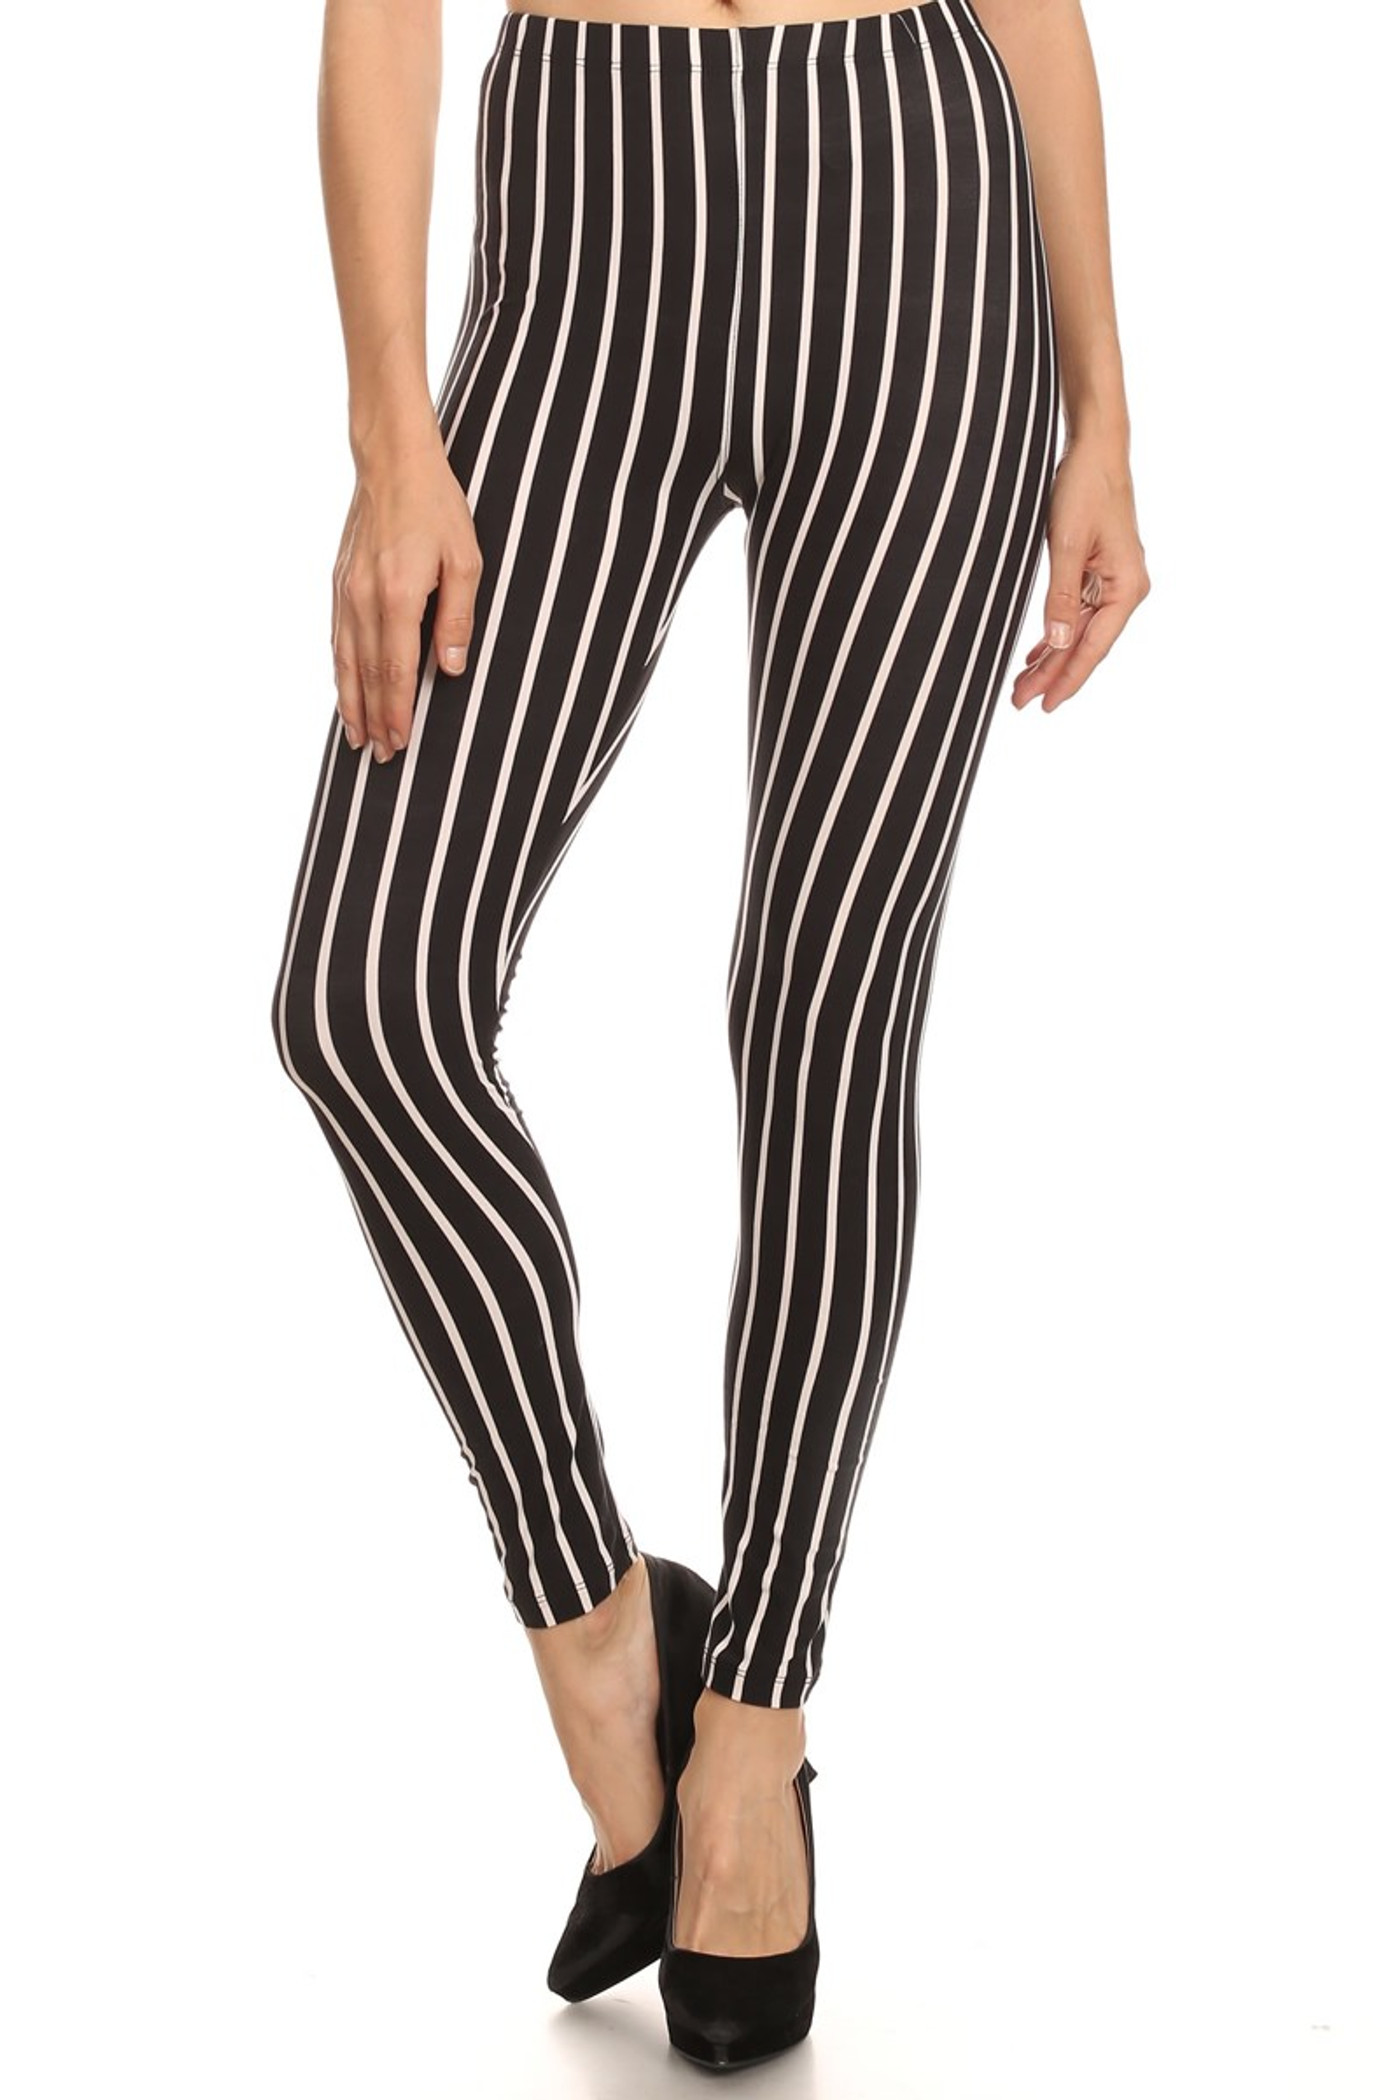 Vertical Black on White Stripes Leggings | OnlyLeggings.com